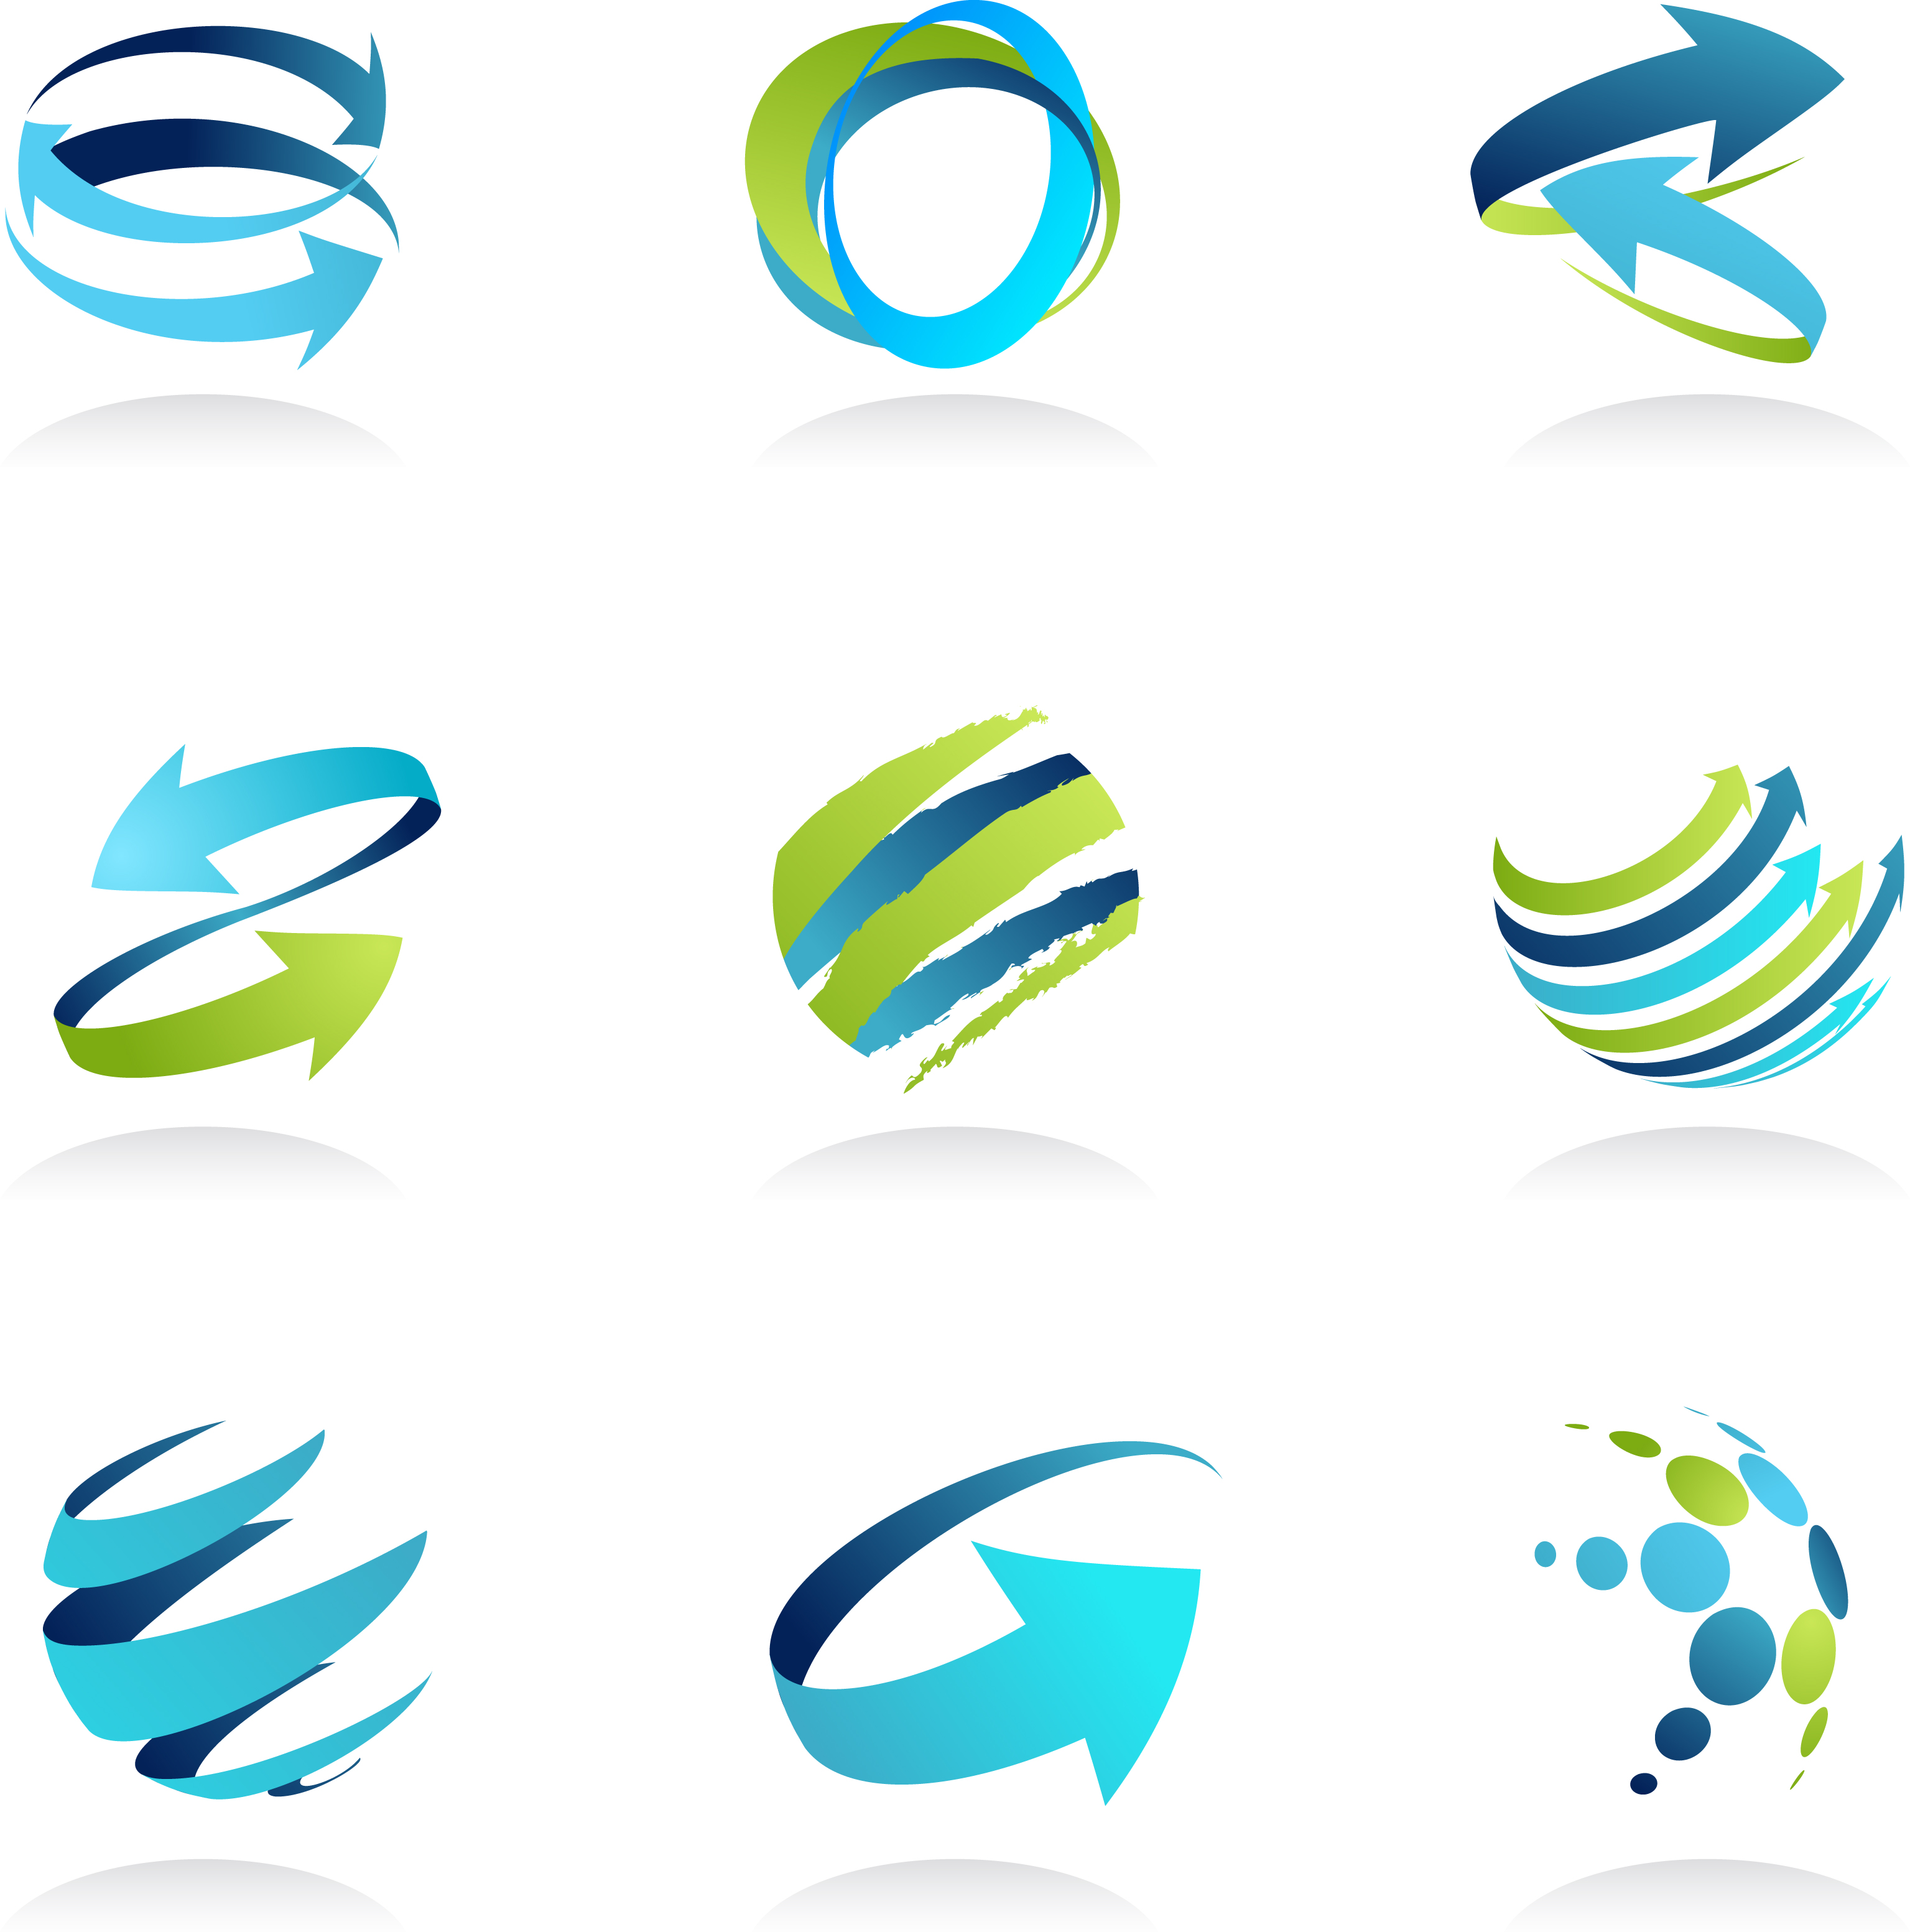 Business logos - zikada